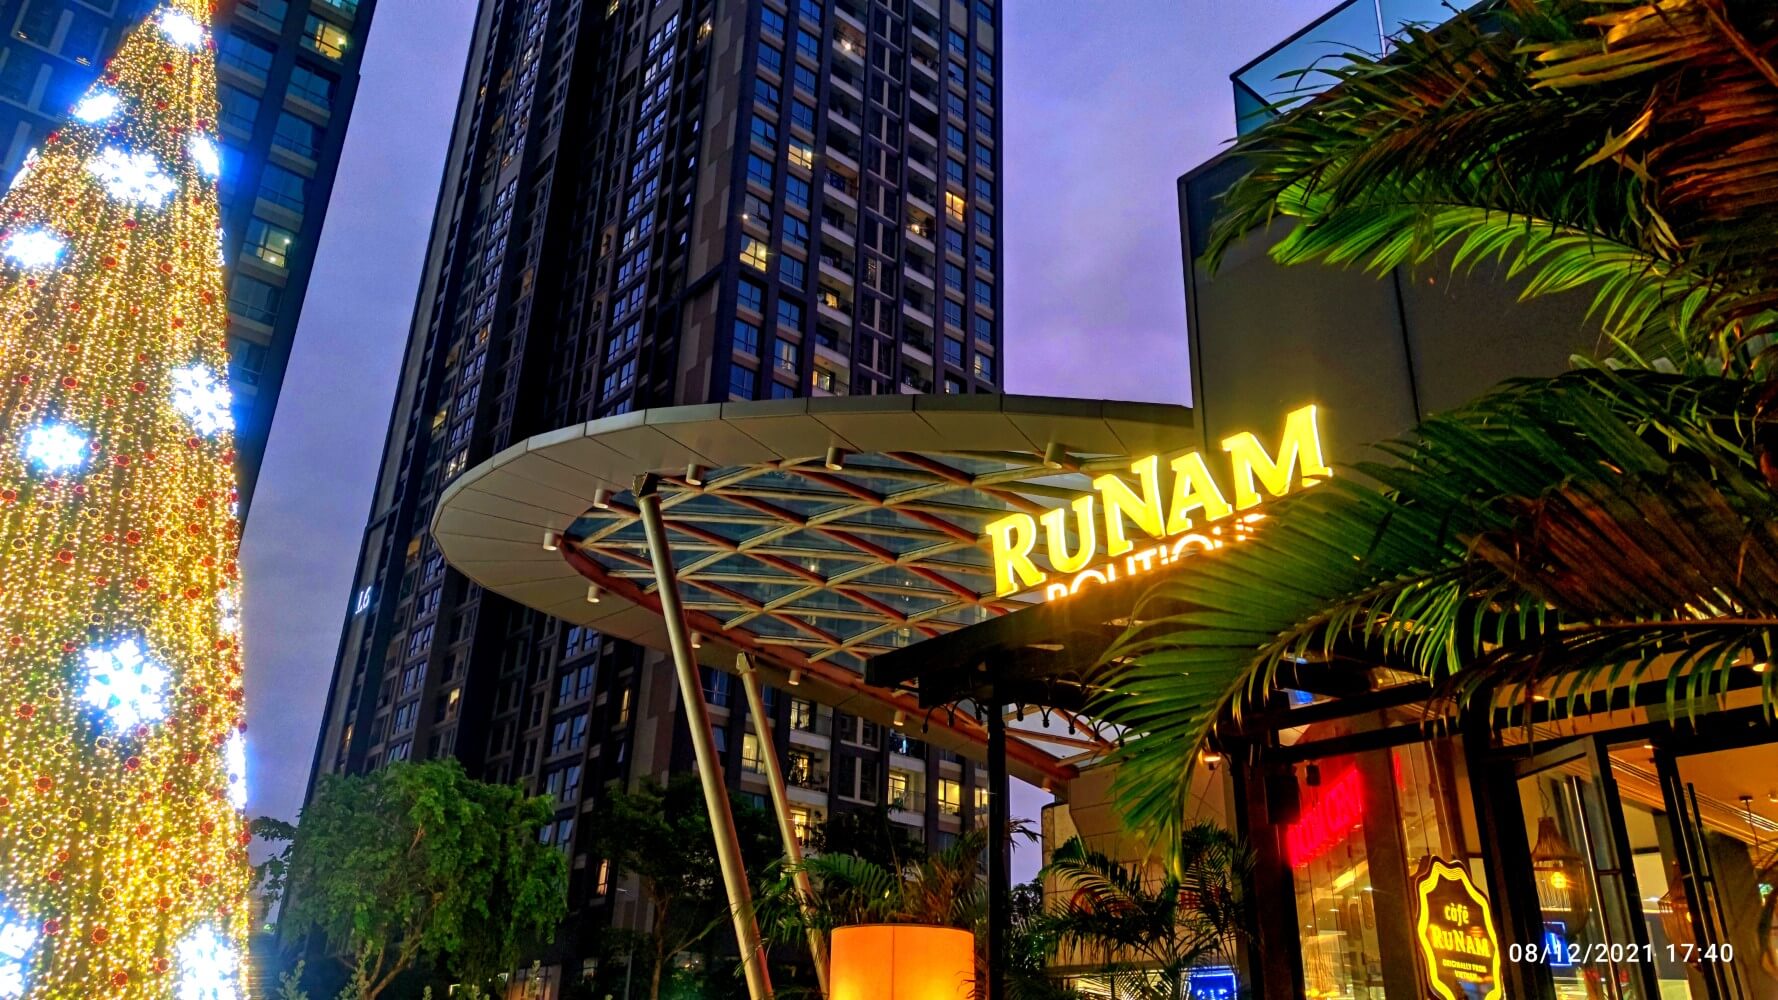 runam-boutique-landmark-81-64c9d4008942c.jpg